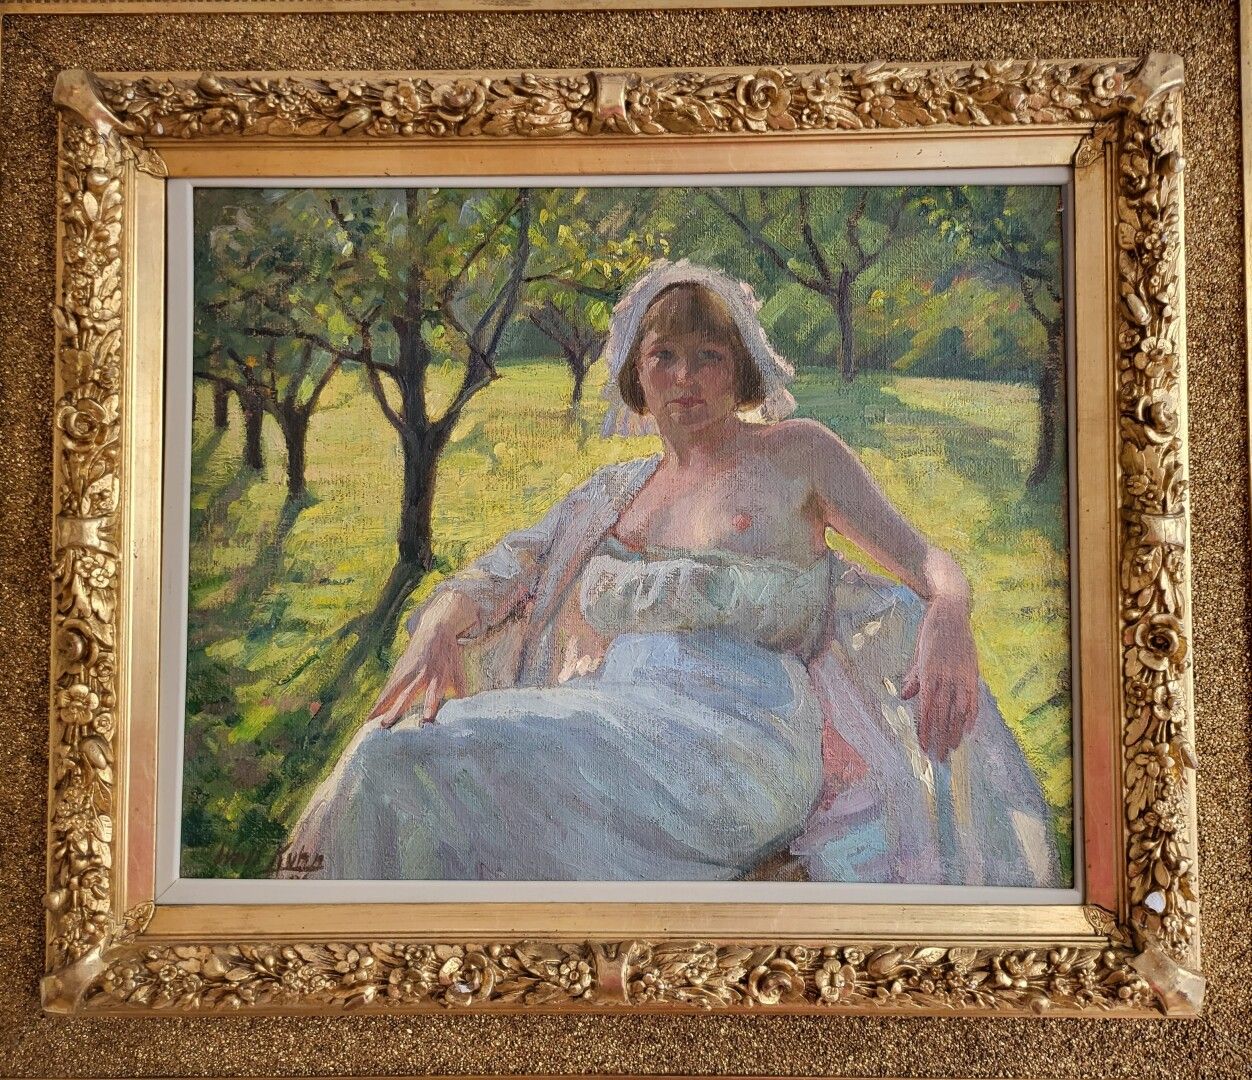 Null 华特-库恩(1877-1949)

果园里的裸体

布面油画

左下方有签名

55 x 63 cm